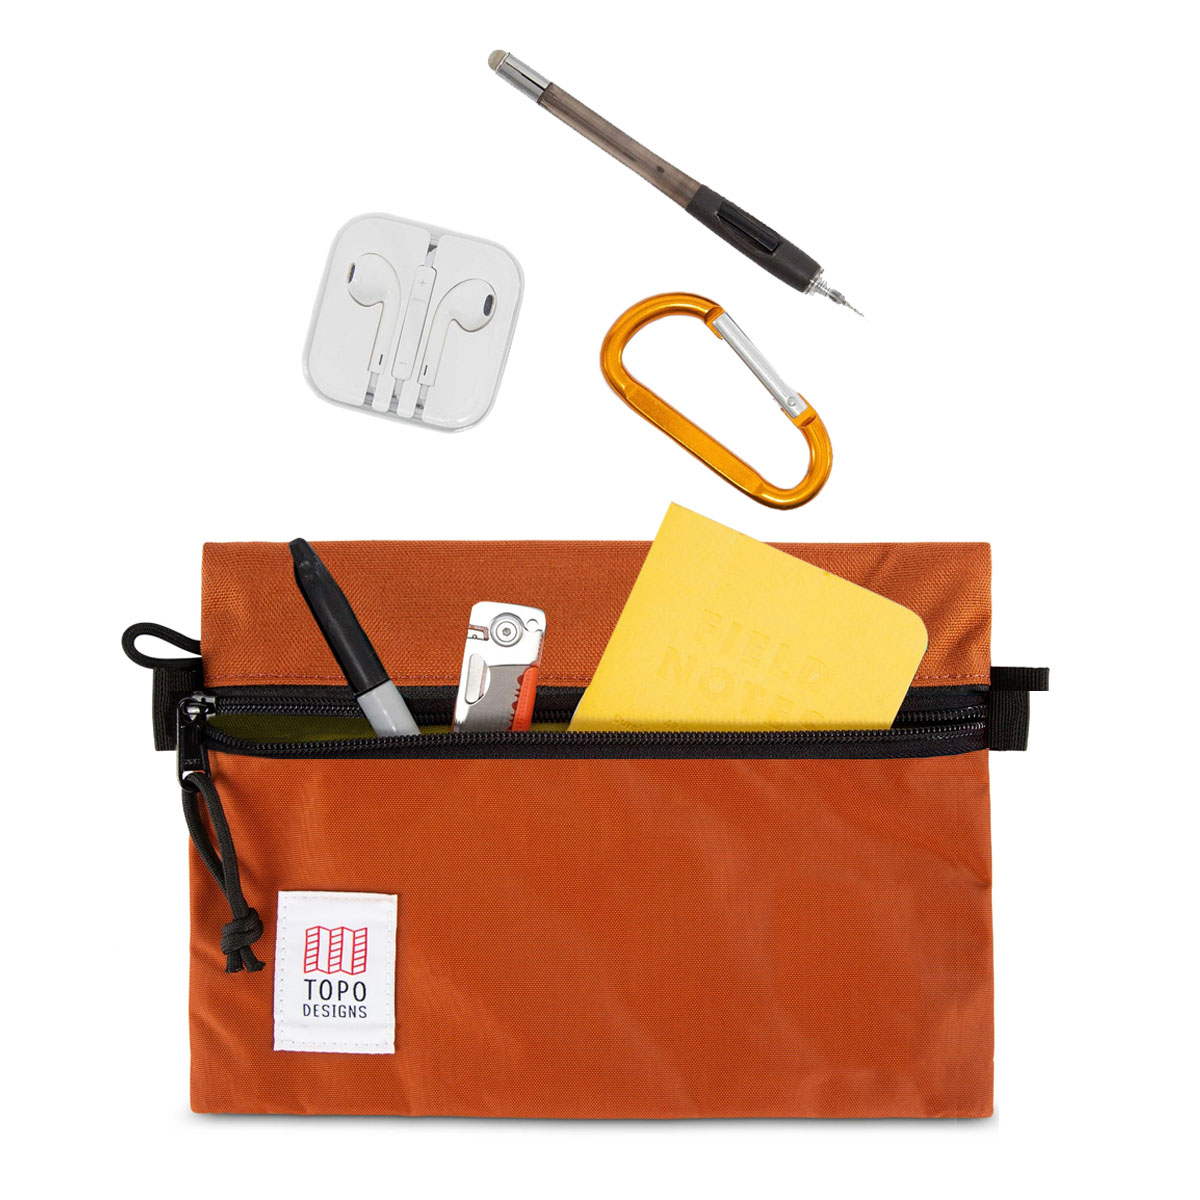 Topo Designs Accessory Bags Clay 3 Sizes, all Ihre Reiseutensilien ordentlich und übersichtlich verstaut